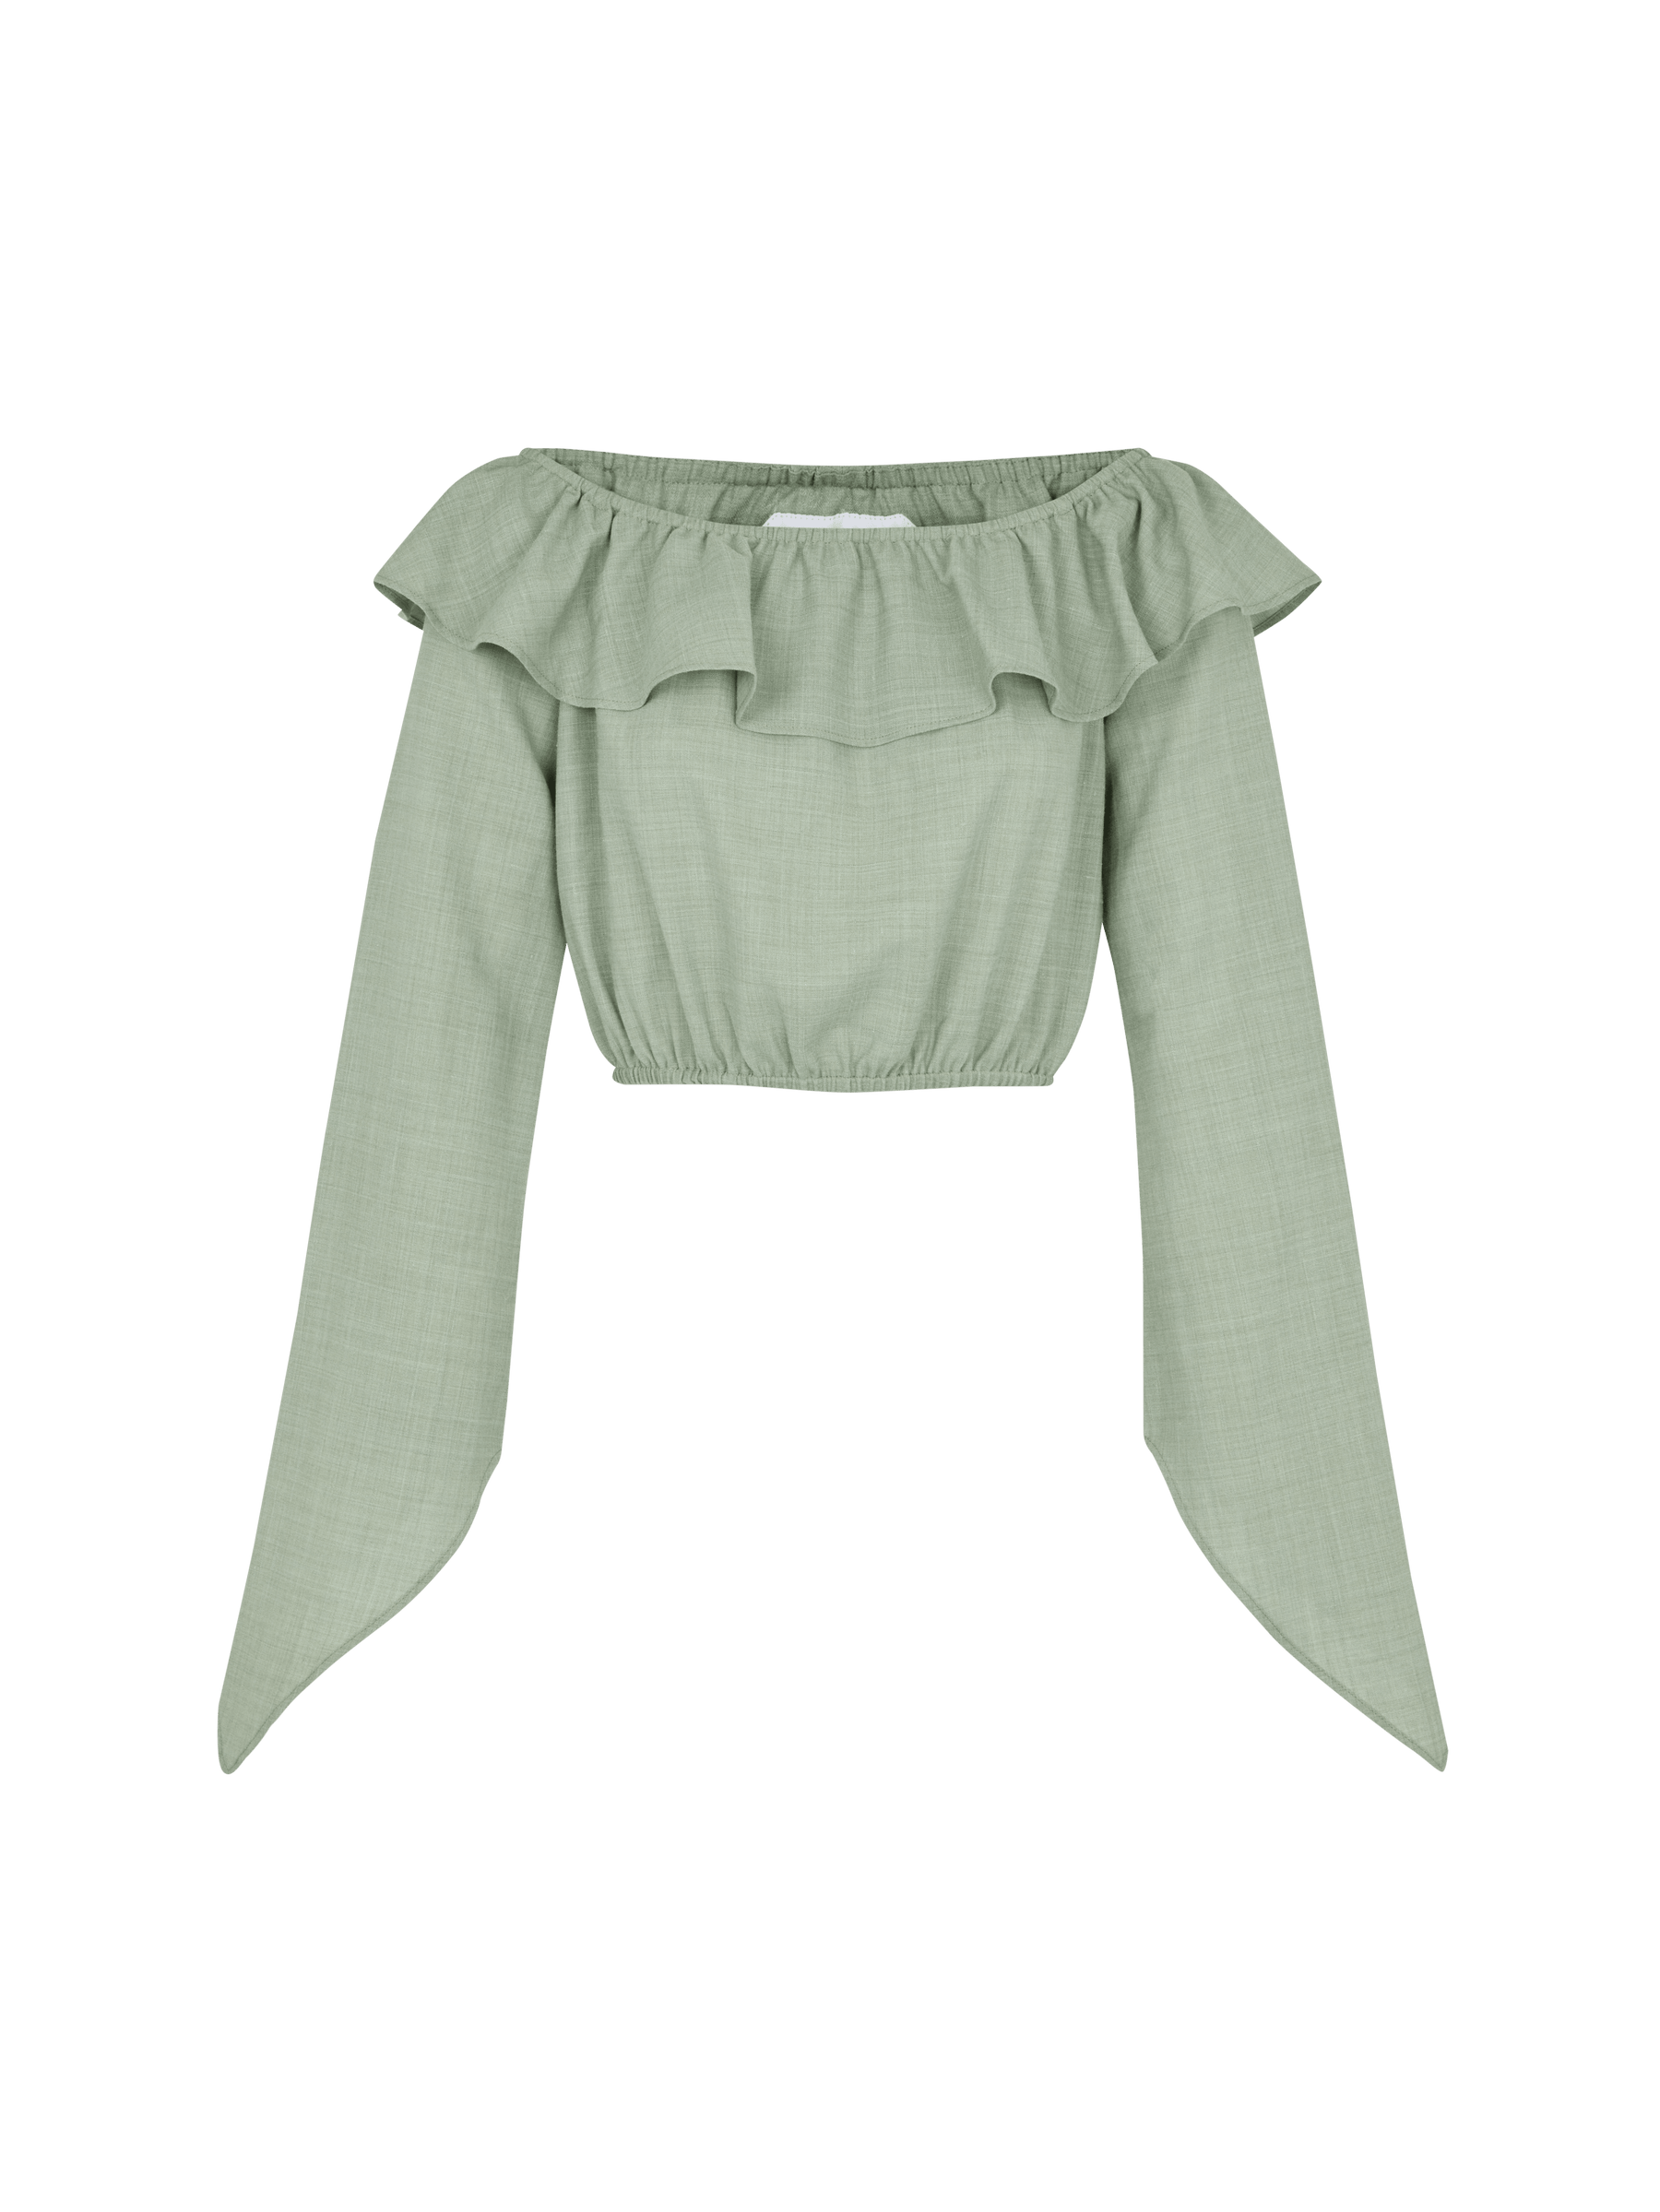 CECILE - Blouse crop top encolure Bardot volantée en toile de coton Oeko-Tex vert céladon Blouse Fête Impériale